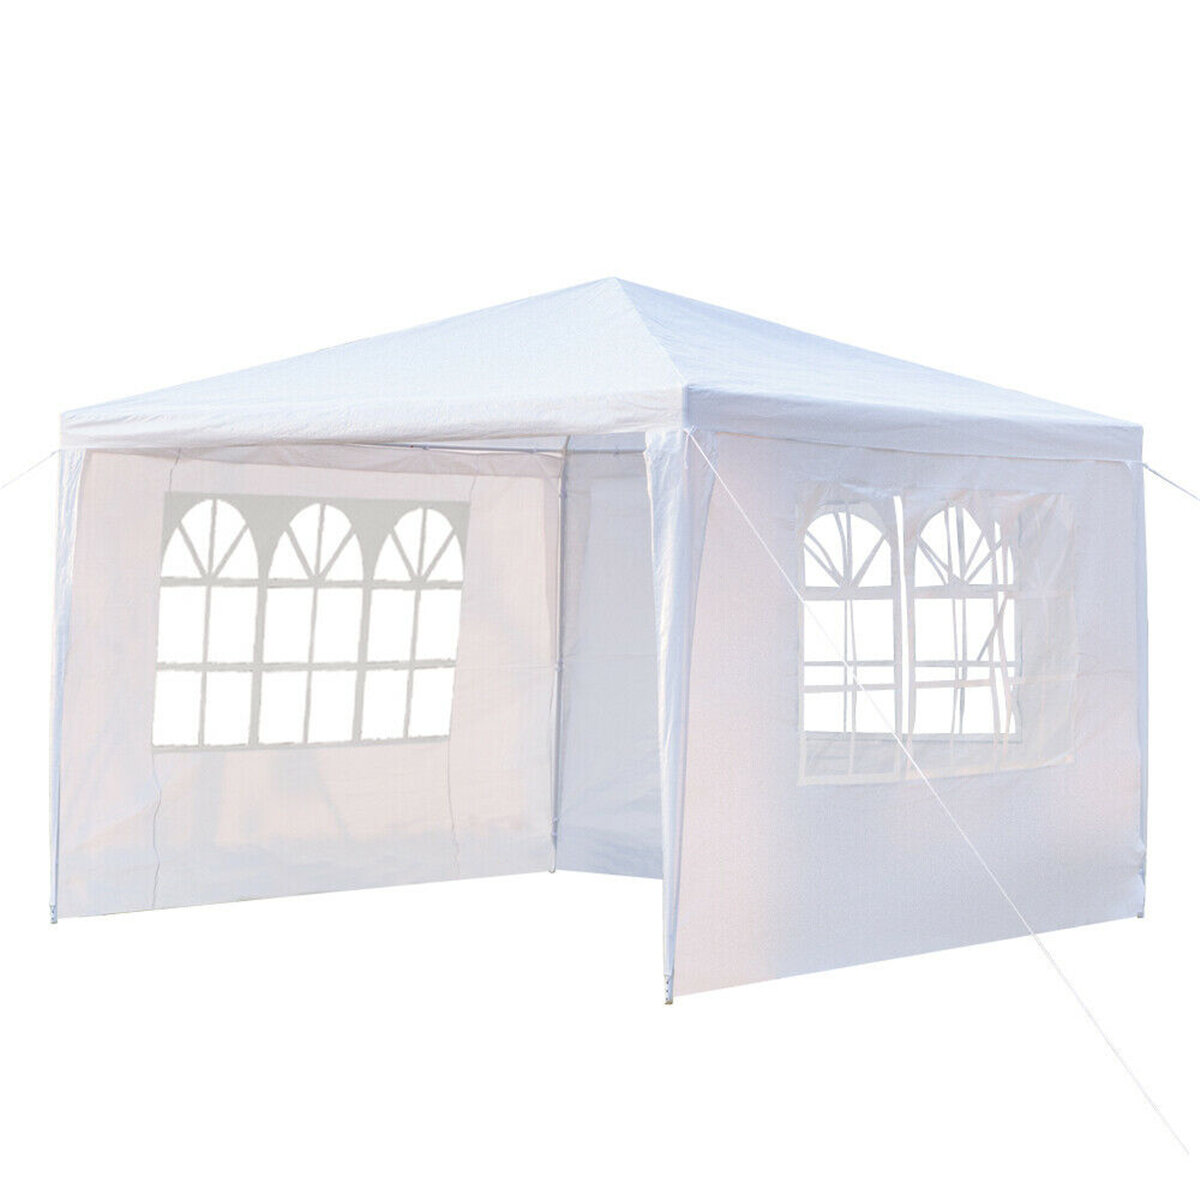 3x4m 3x4m com parede lateral e 3 tenda para barraca tenda impermeável para festas de casamento e guarda-sol Barraca de acampamento com janela